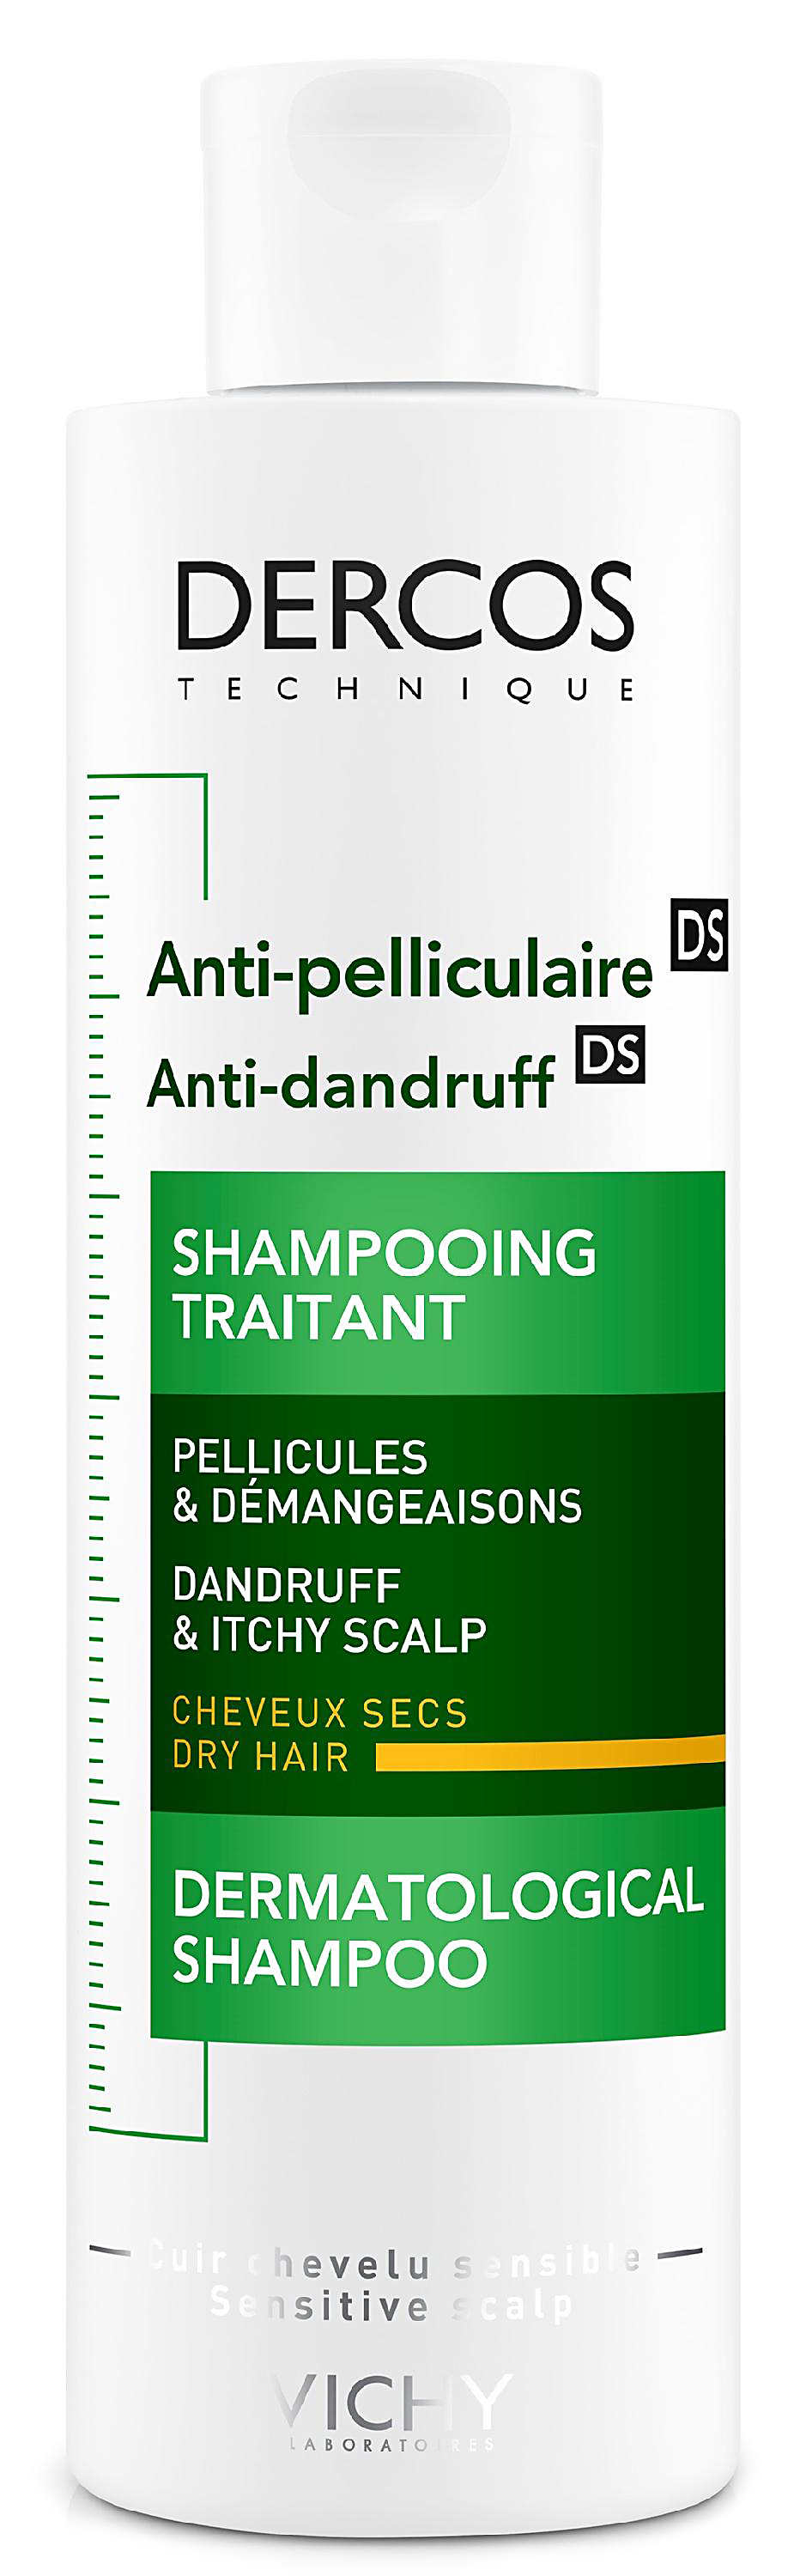 Dercos DS интенсивный шампунь-уход против перхоти для сухой кожи головы 200мл (Виши)